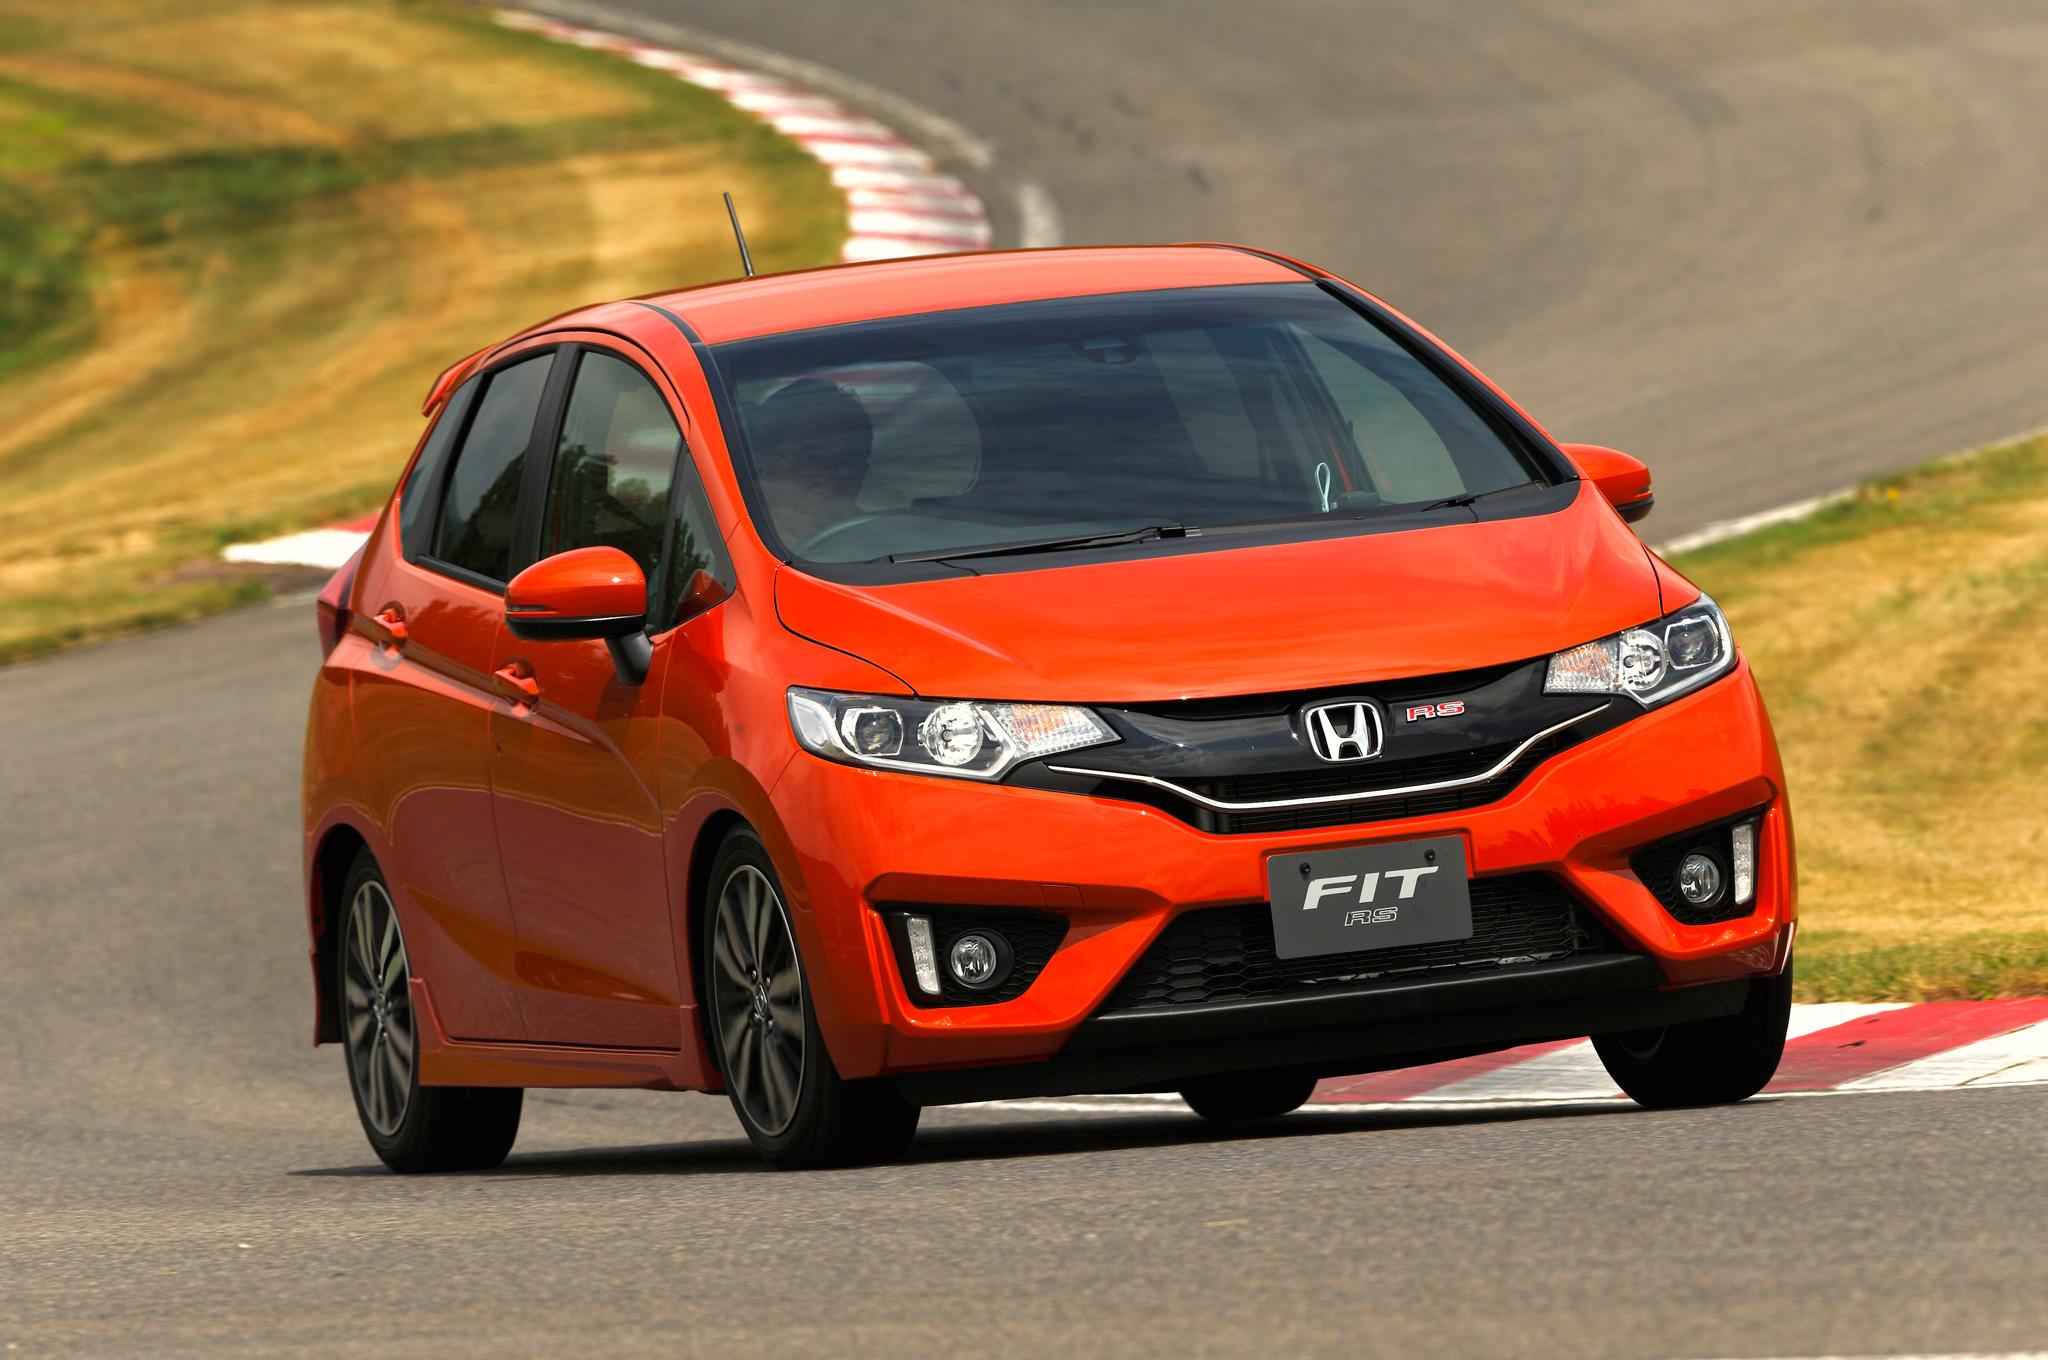 Novo Honda Fit 2014 - Preço, Consumo, Fotos, Ficha Técnica e Avaliação